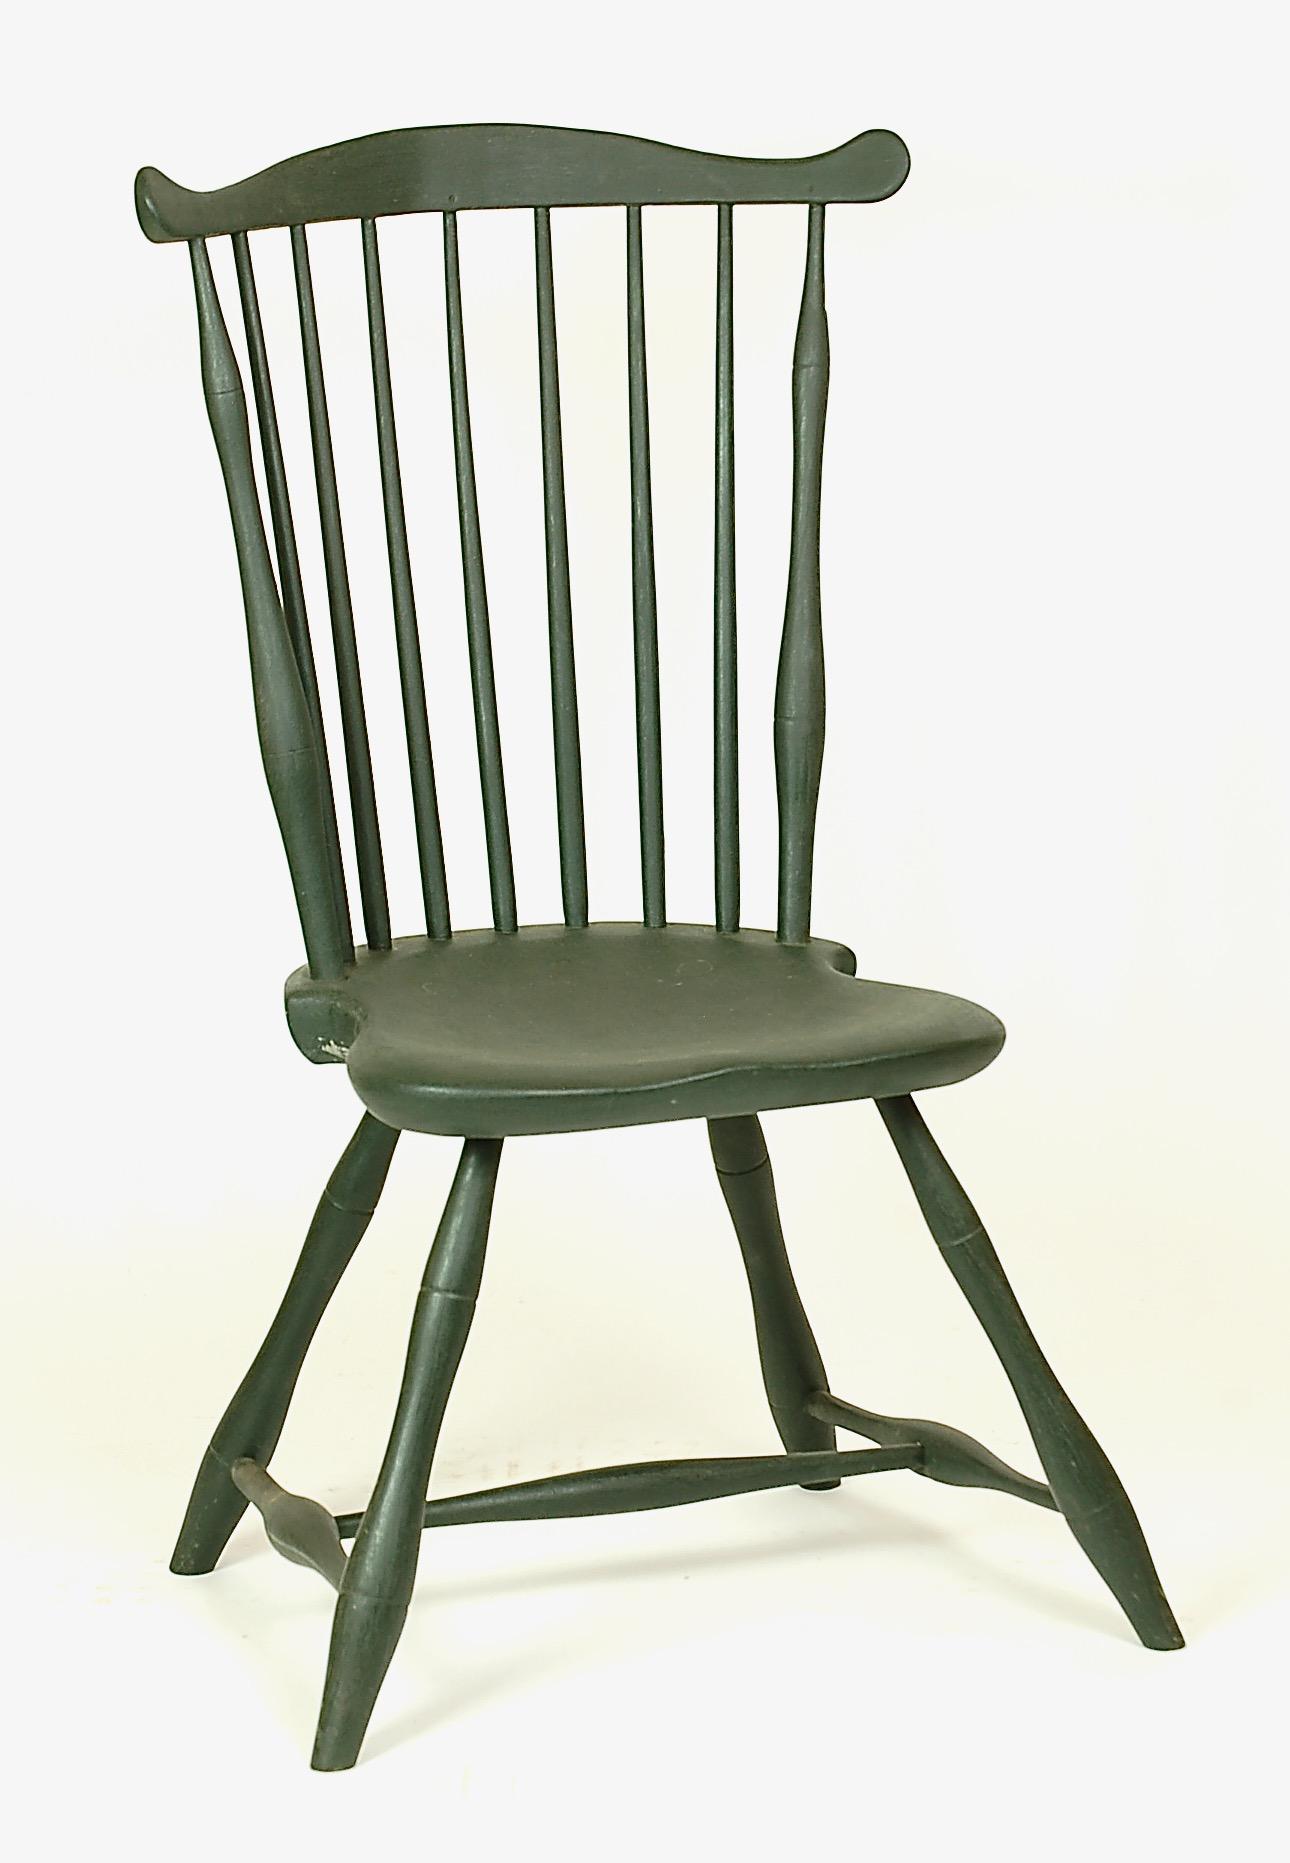 Fan-back Windsor chair